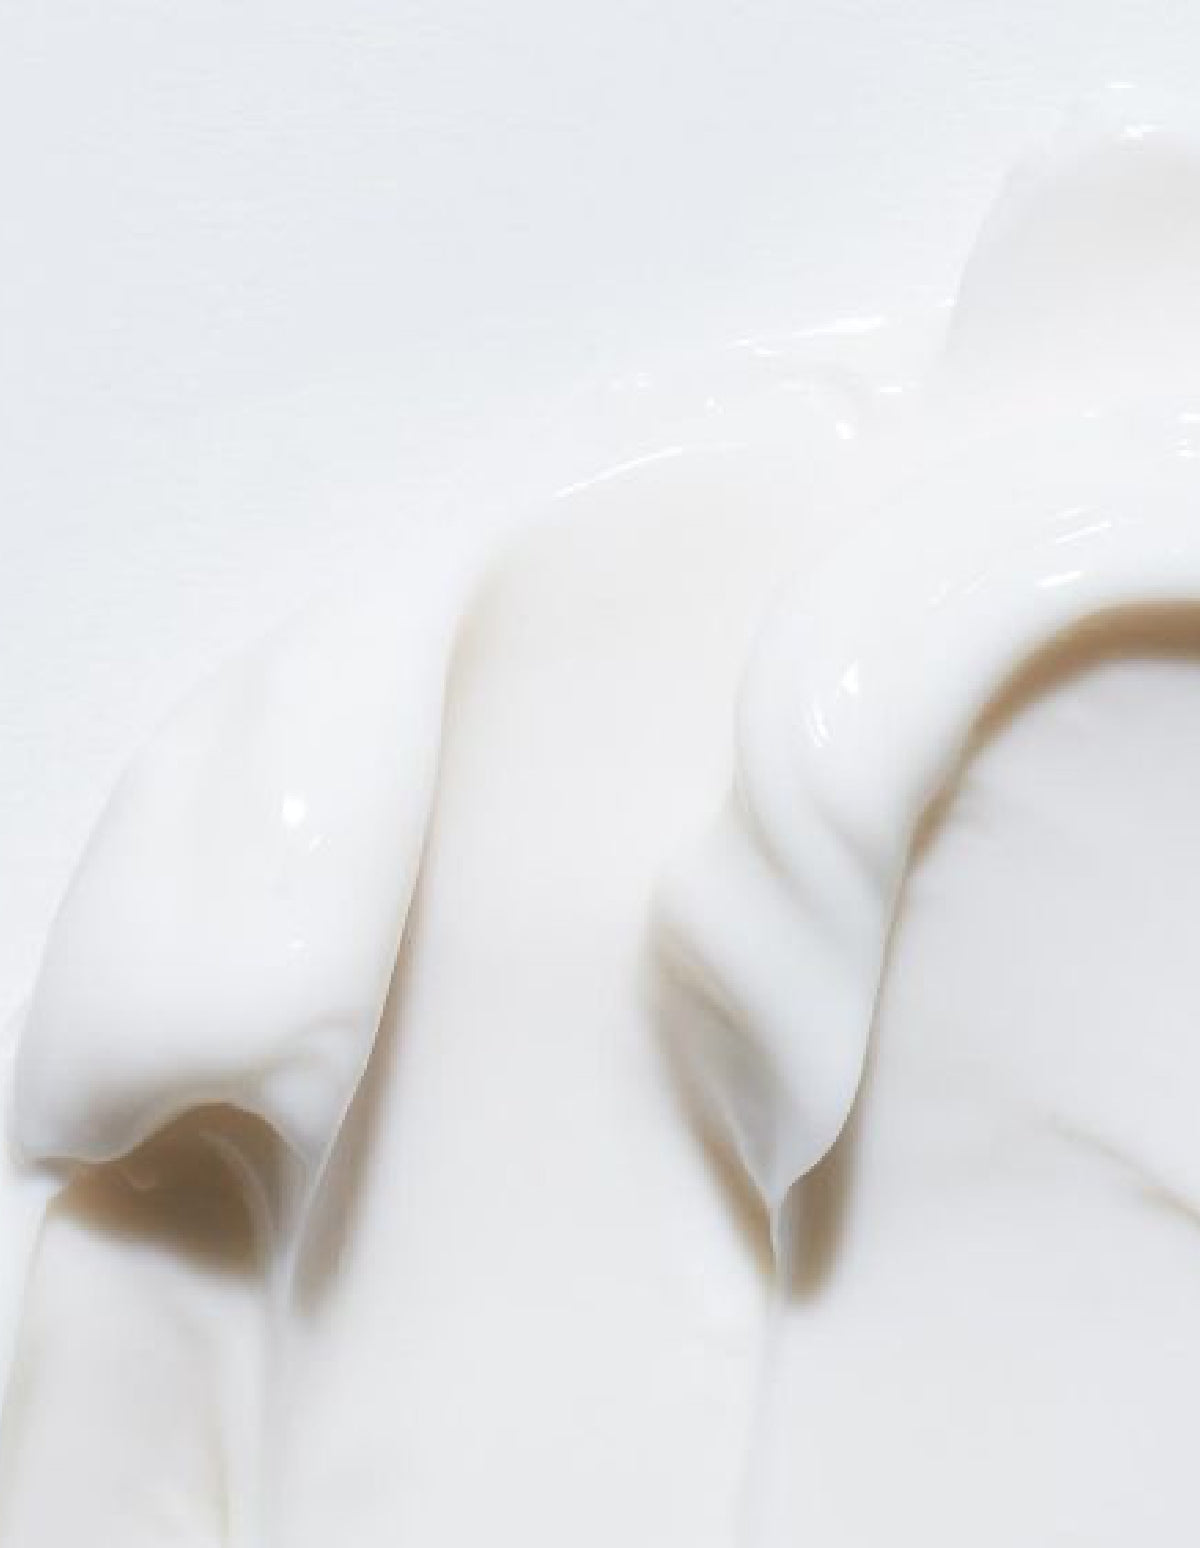 Creamask Kırılma Karşıtı, Bağ Güçlendirici Durulanmayan Bakım Kremi / 250 ml